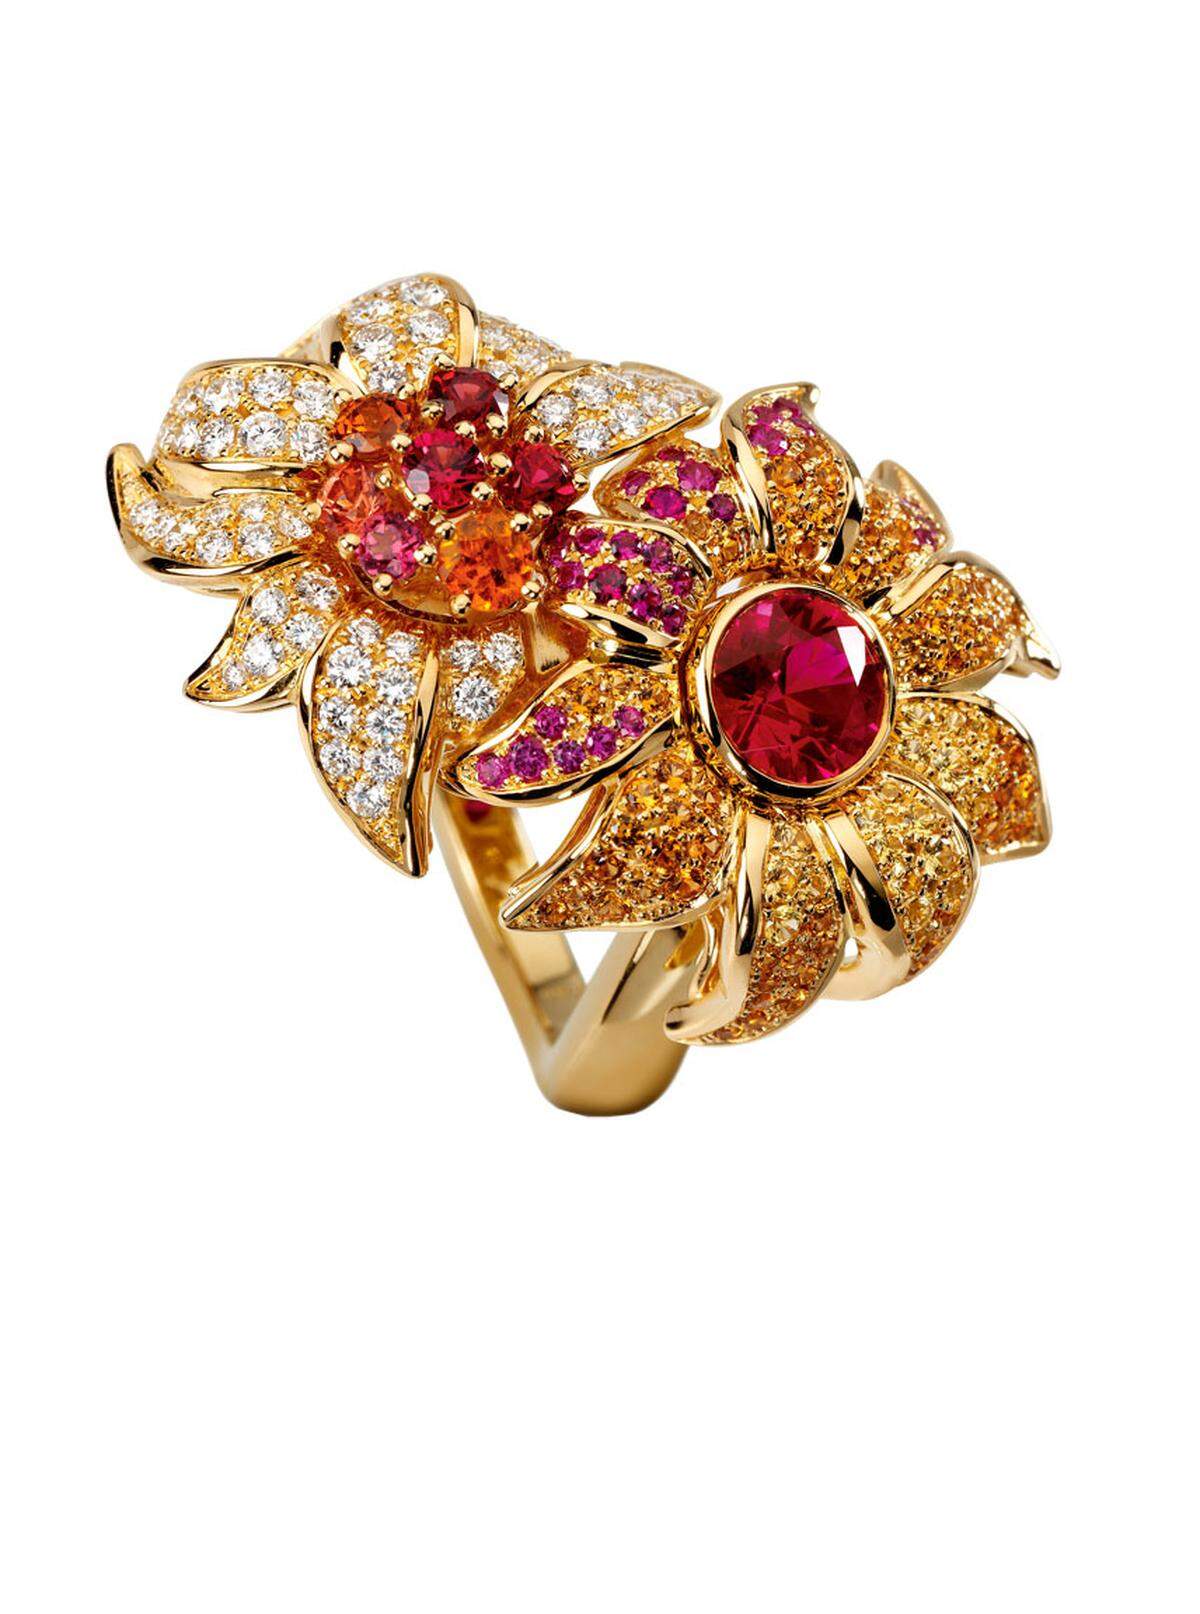 Ring, Gelbgold mit Farbedelsteinen aus der Kollektion L&rsquo;Orangerie von Breguet, Kohlmarkt 4, 37.400 Euro.